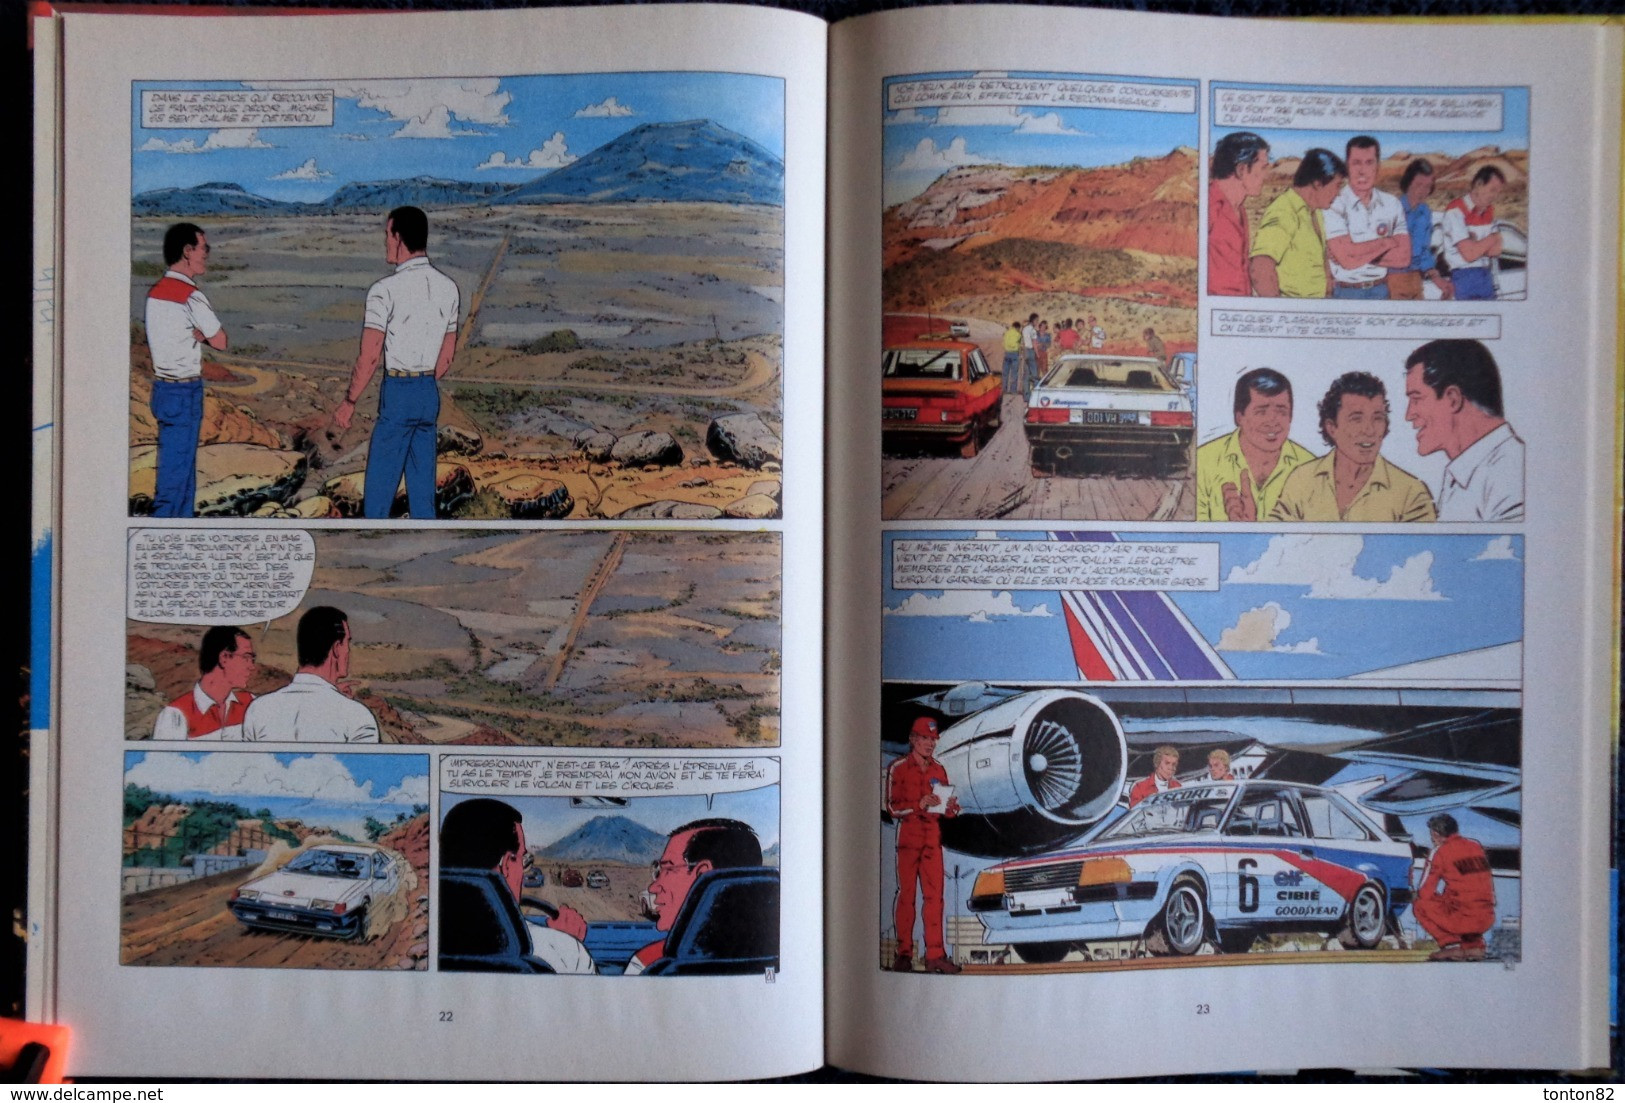 Jean Graton - Michel Vaillant n° 39 - Rallye sur un volcan - Hachette Éditeur - ( E.O. 1981 )